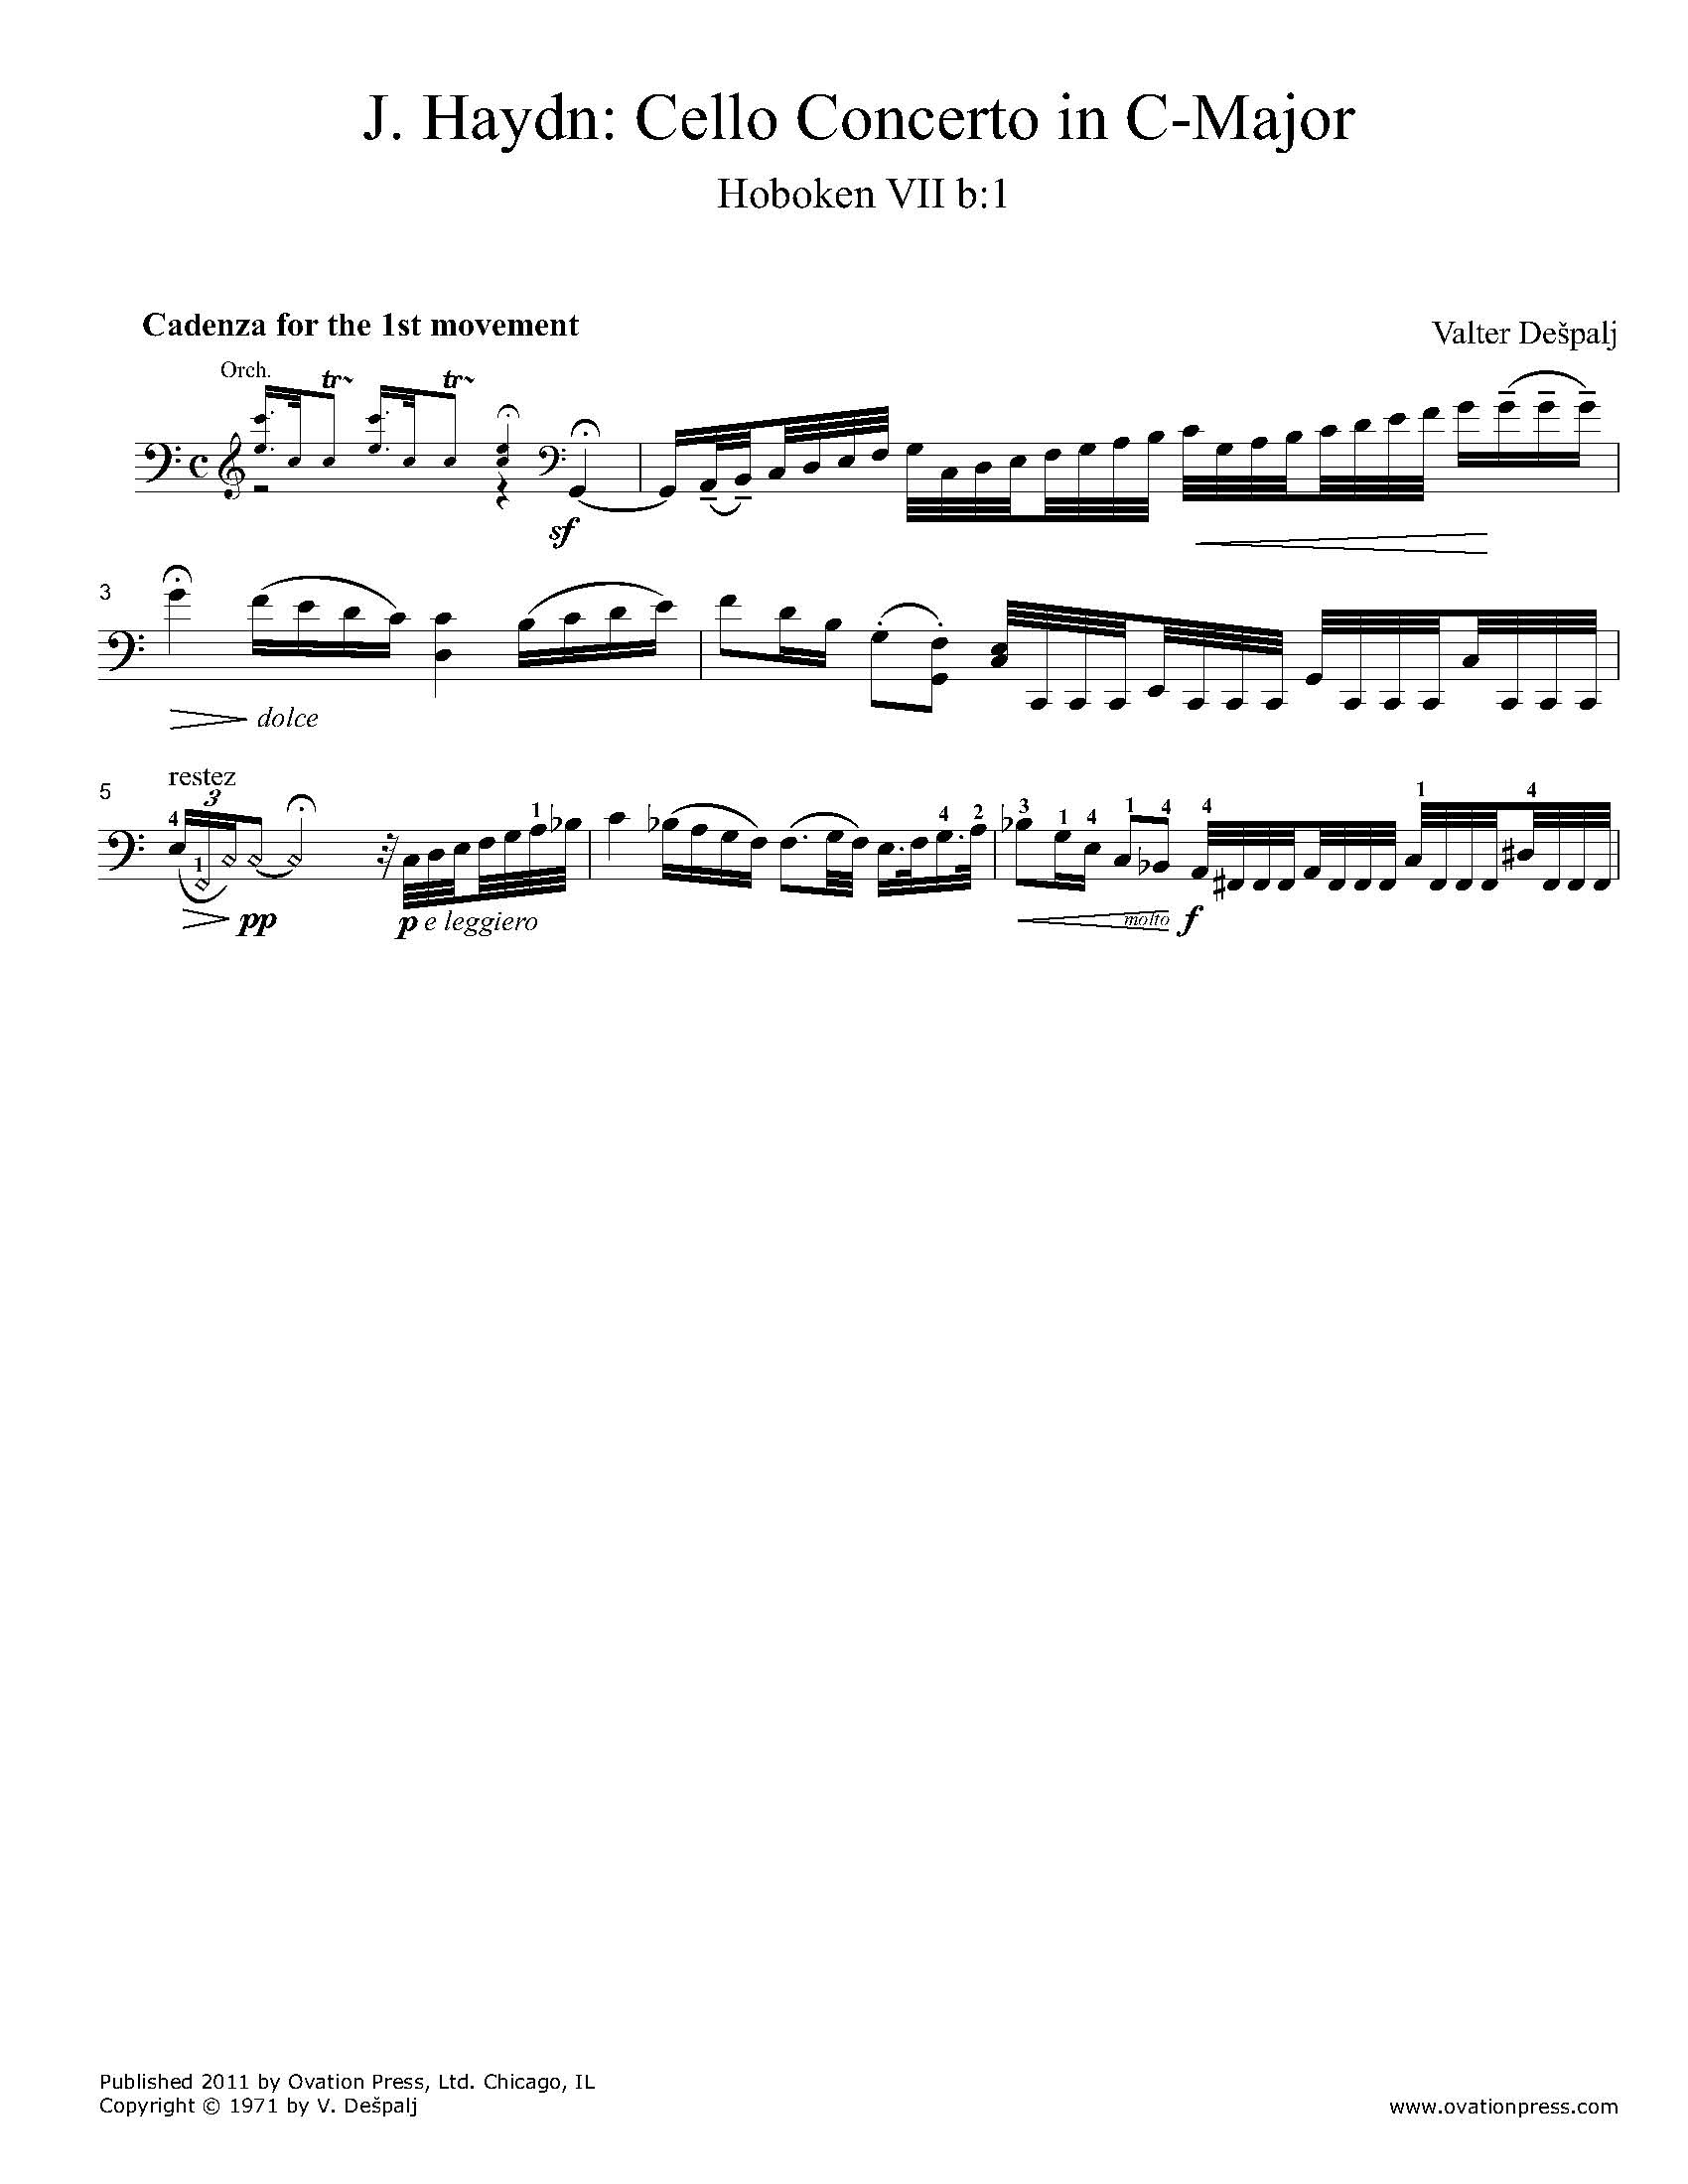 Haydn Cello Concerto No. 1 in C-Major Cadenzas